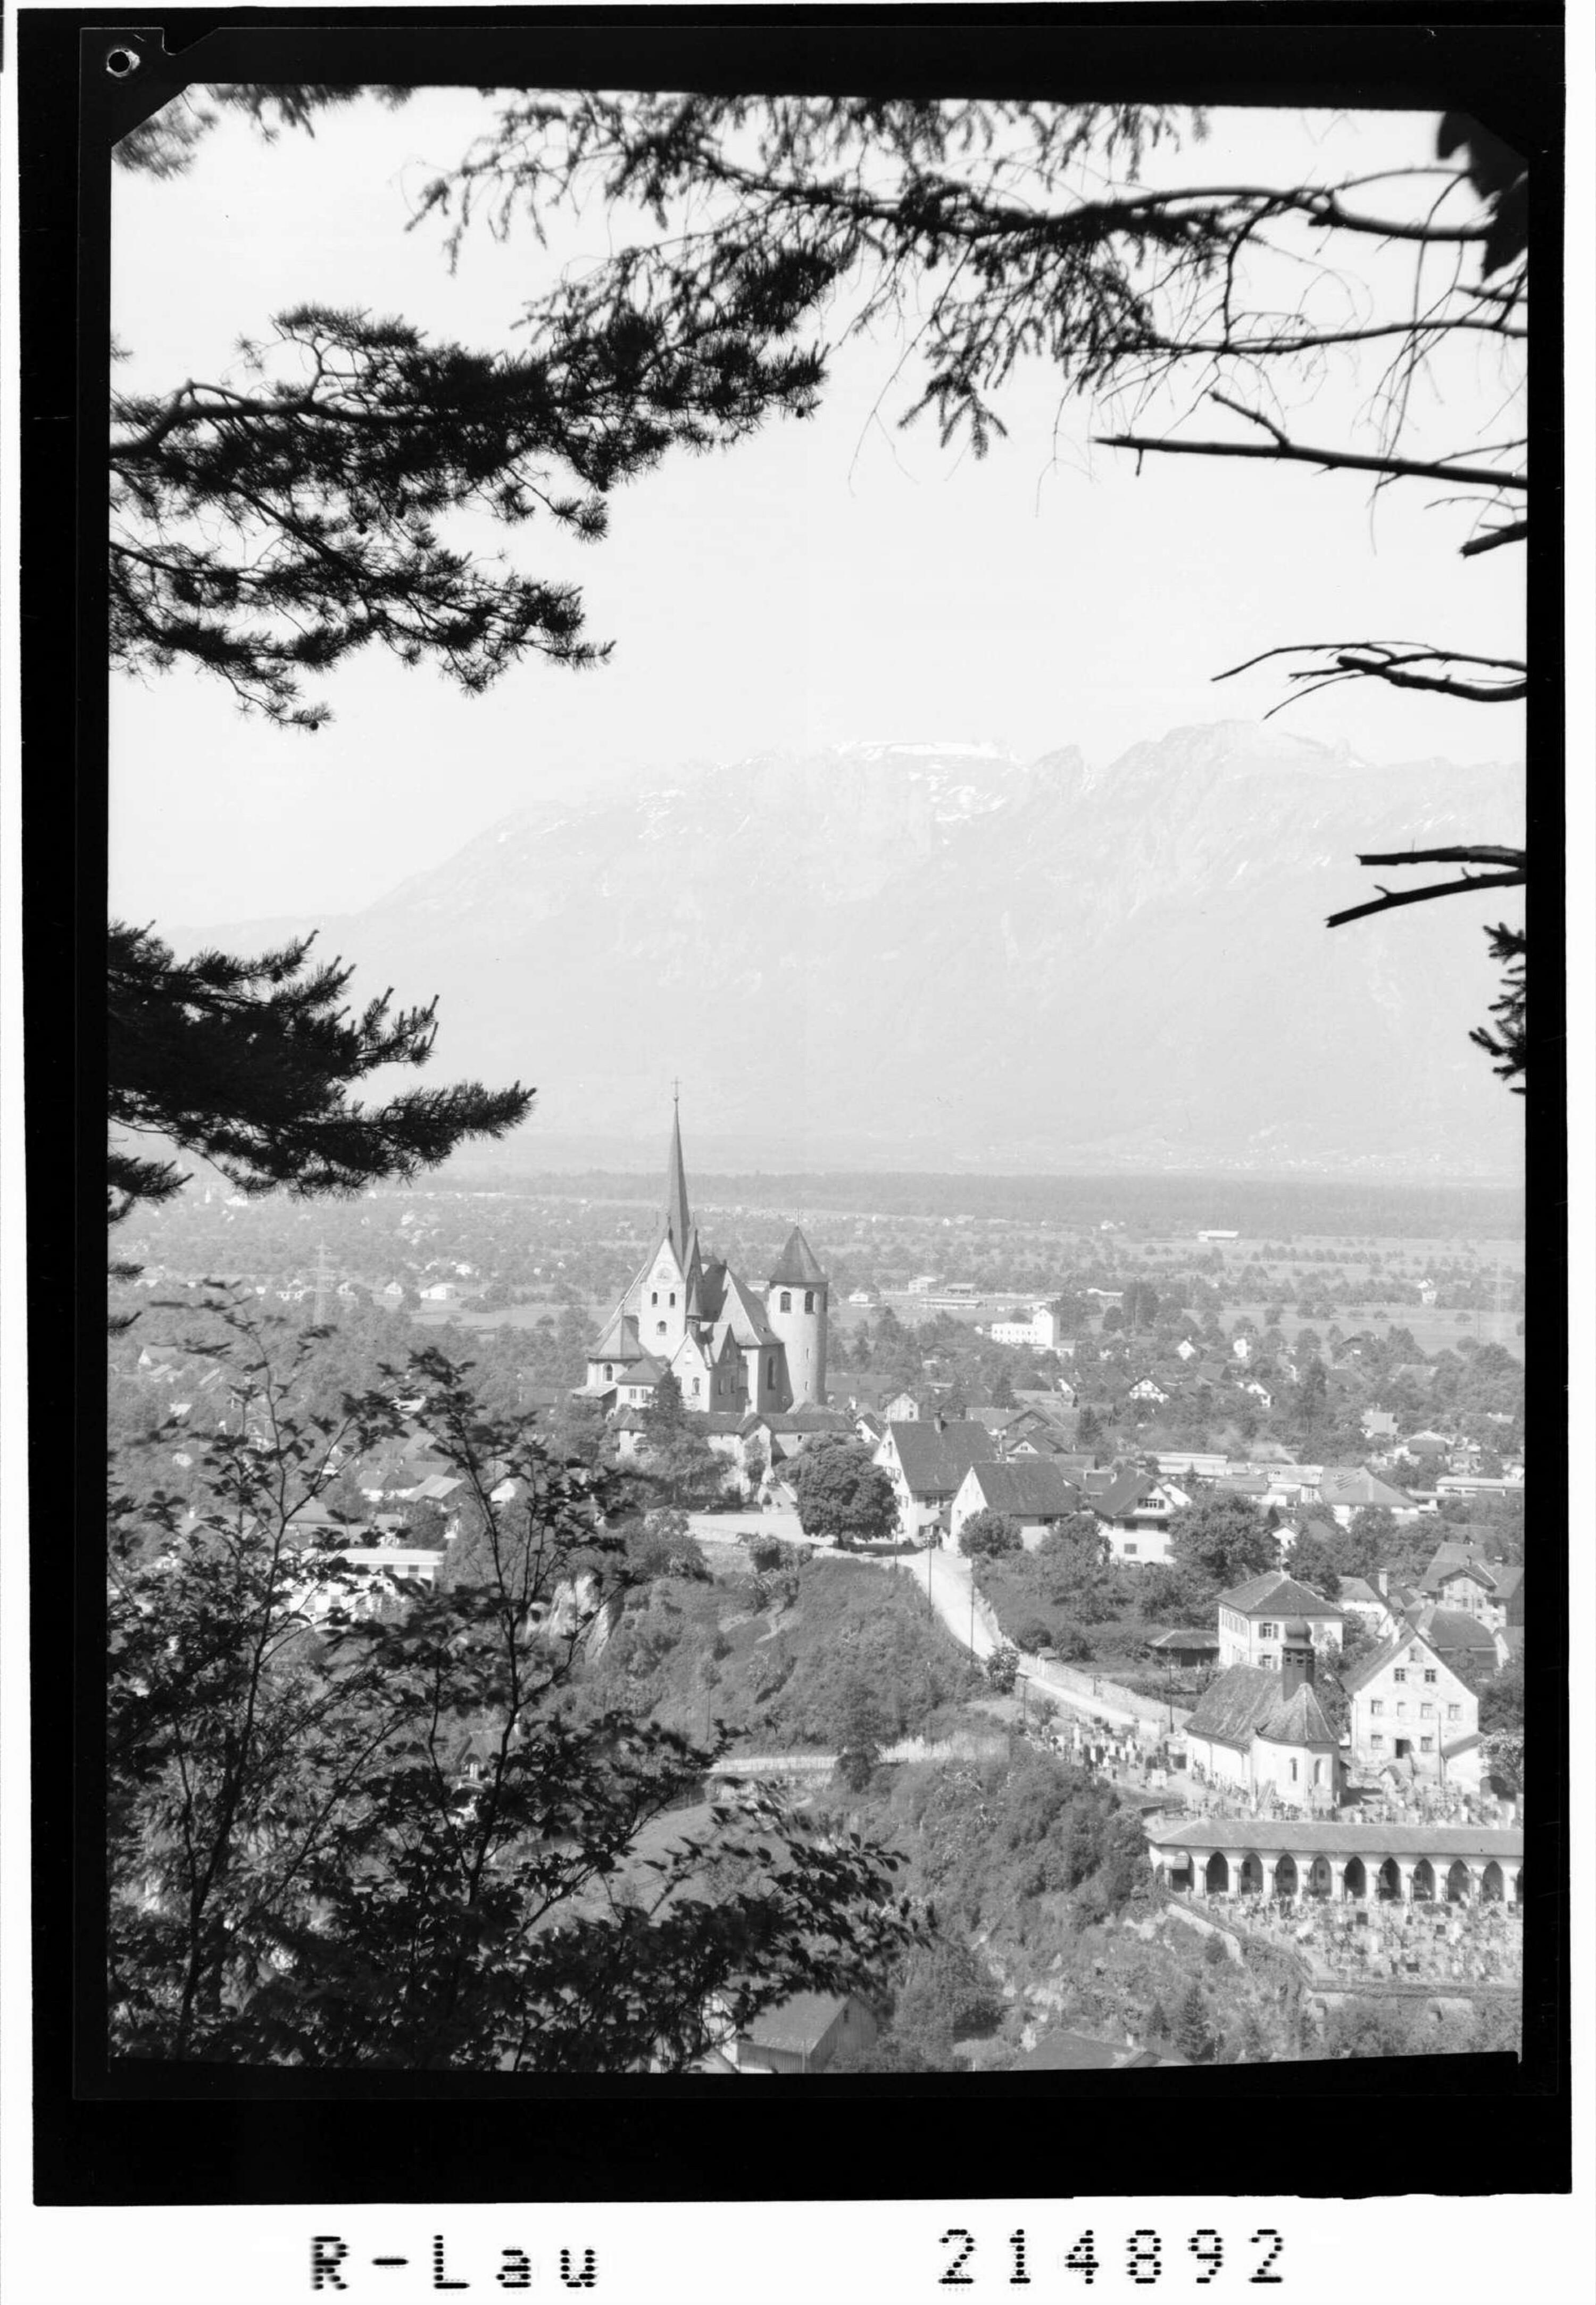 Wallfahrtskirche Rankweil, Vorarlberg gegen Schweizer Berge></div>


    <hr>
    <div class=